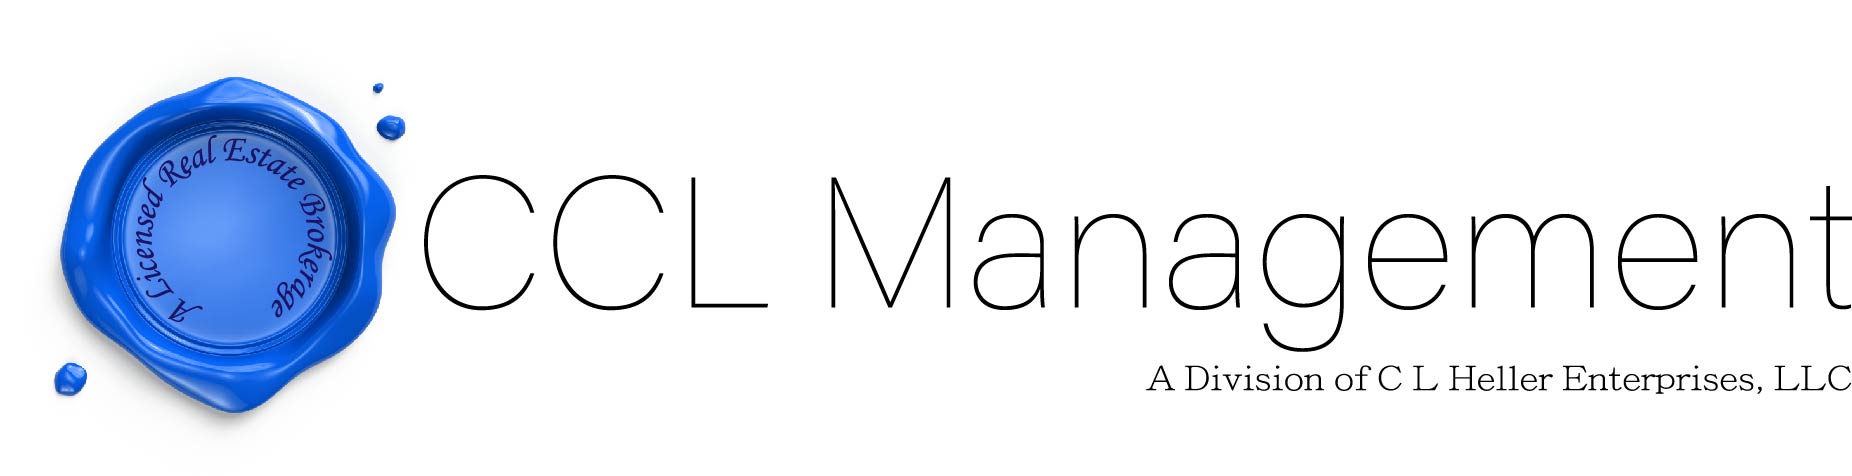 CCL Management logo